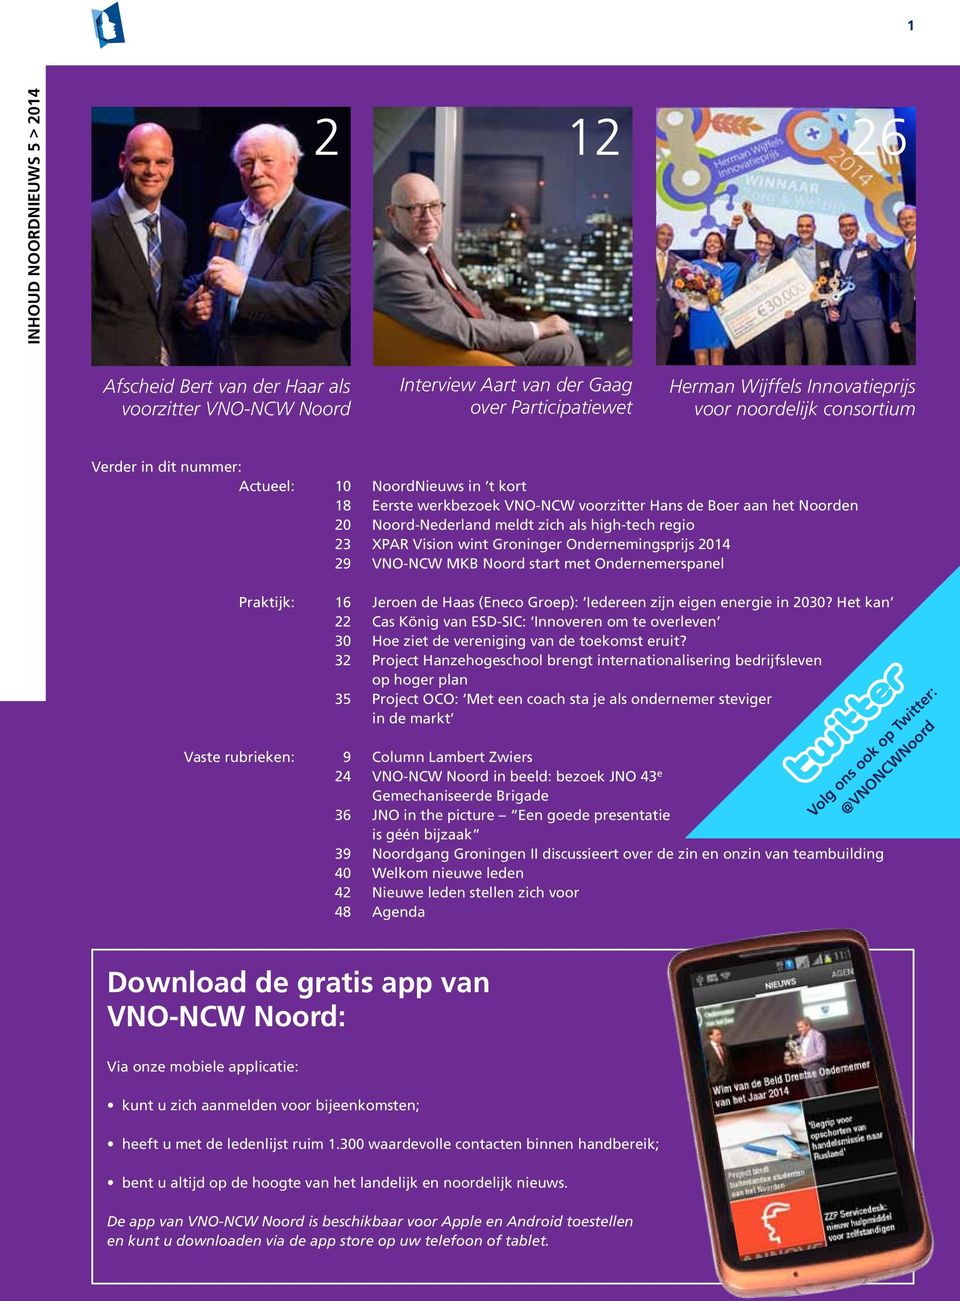 Vision wint Groninger Ondernemingsprijs 2014 29 VNO-NCW MKB Noord start met Ondernemerspanel Praktijk: 16 Jeroen de Haas (Eneco Groep): Iedereen zijn eigen energie in 2030?